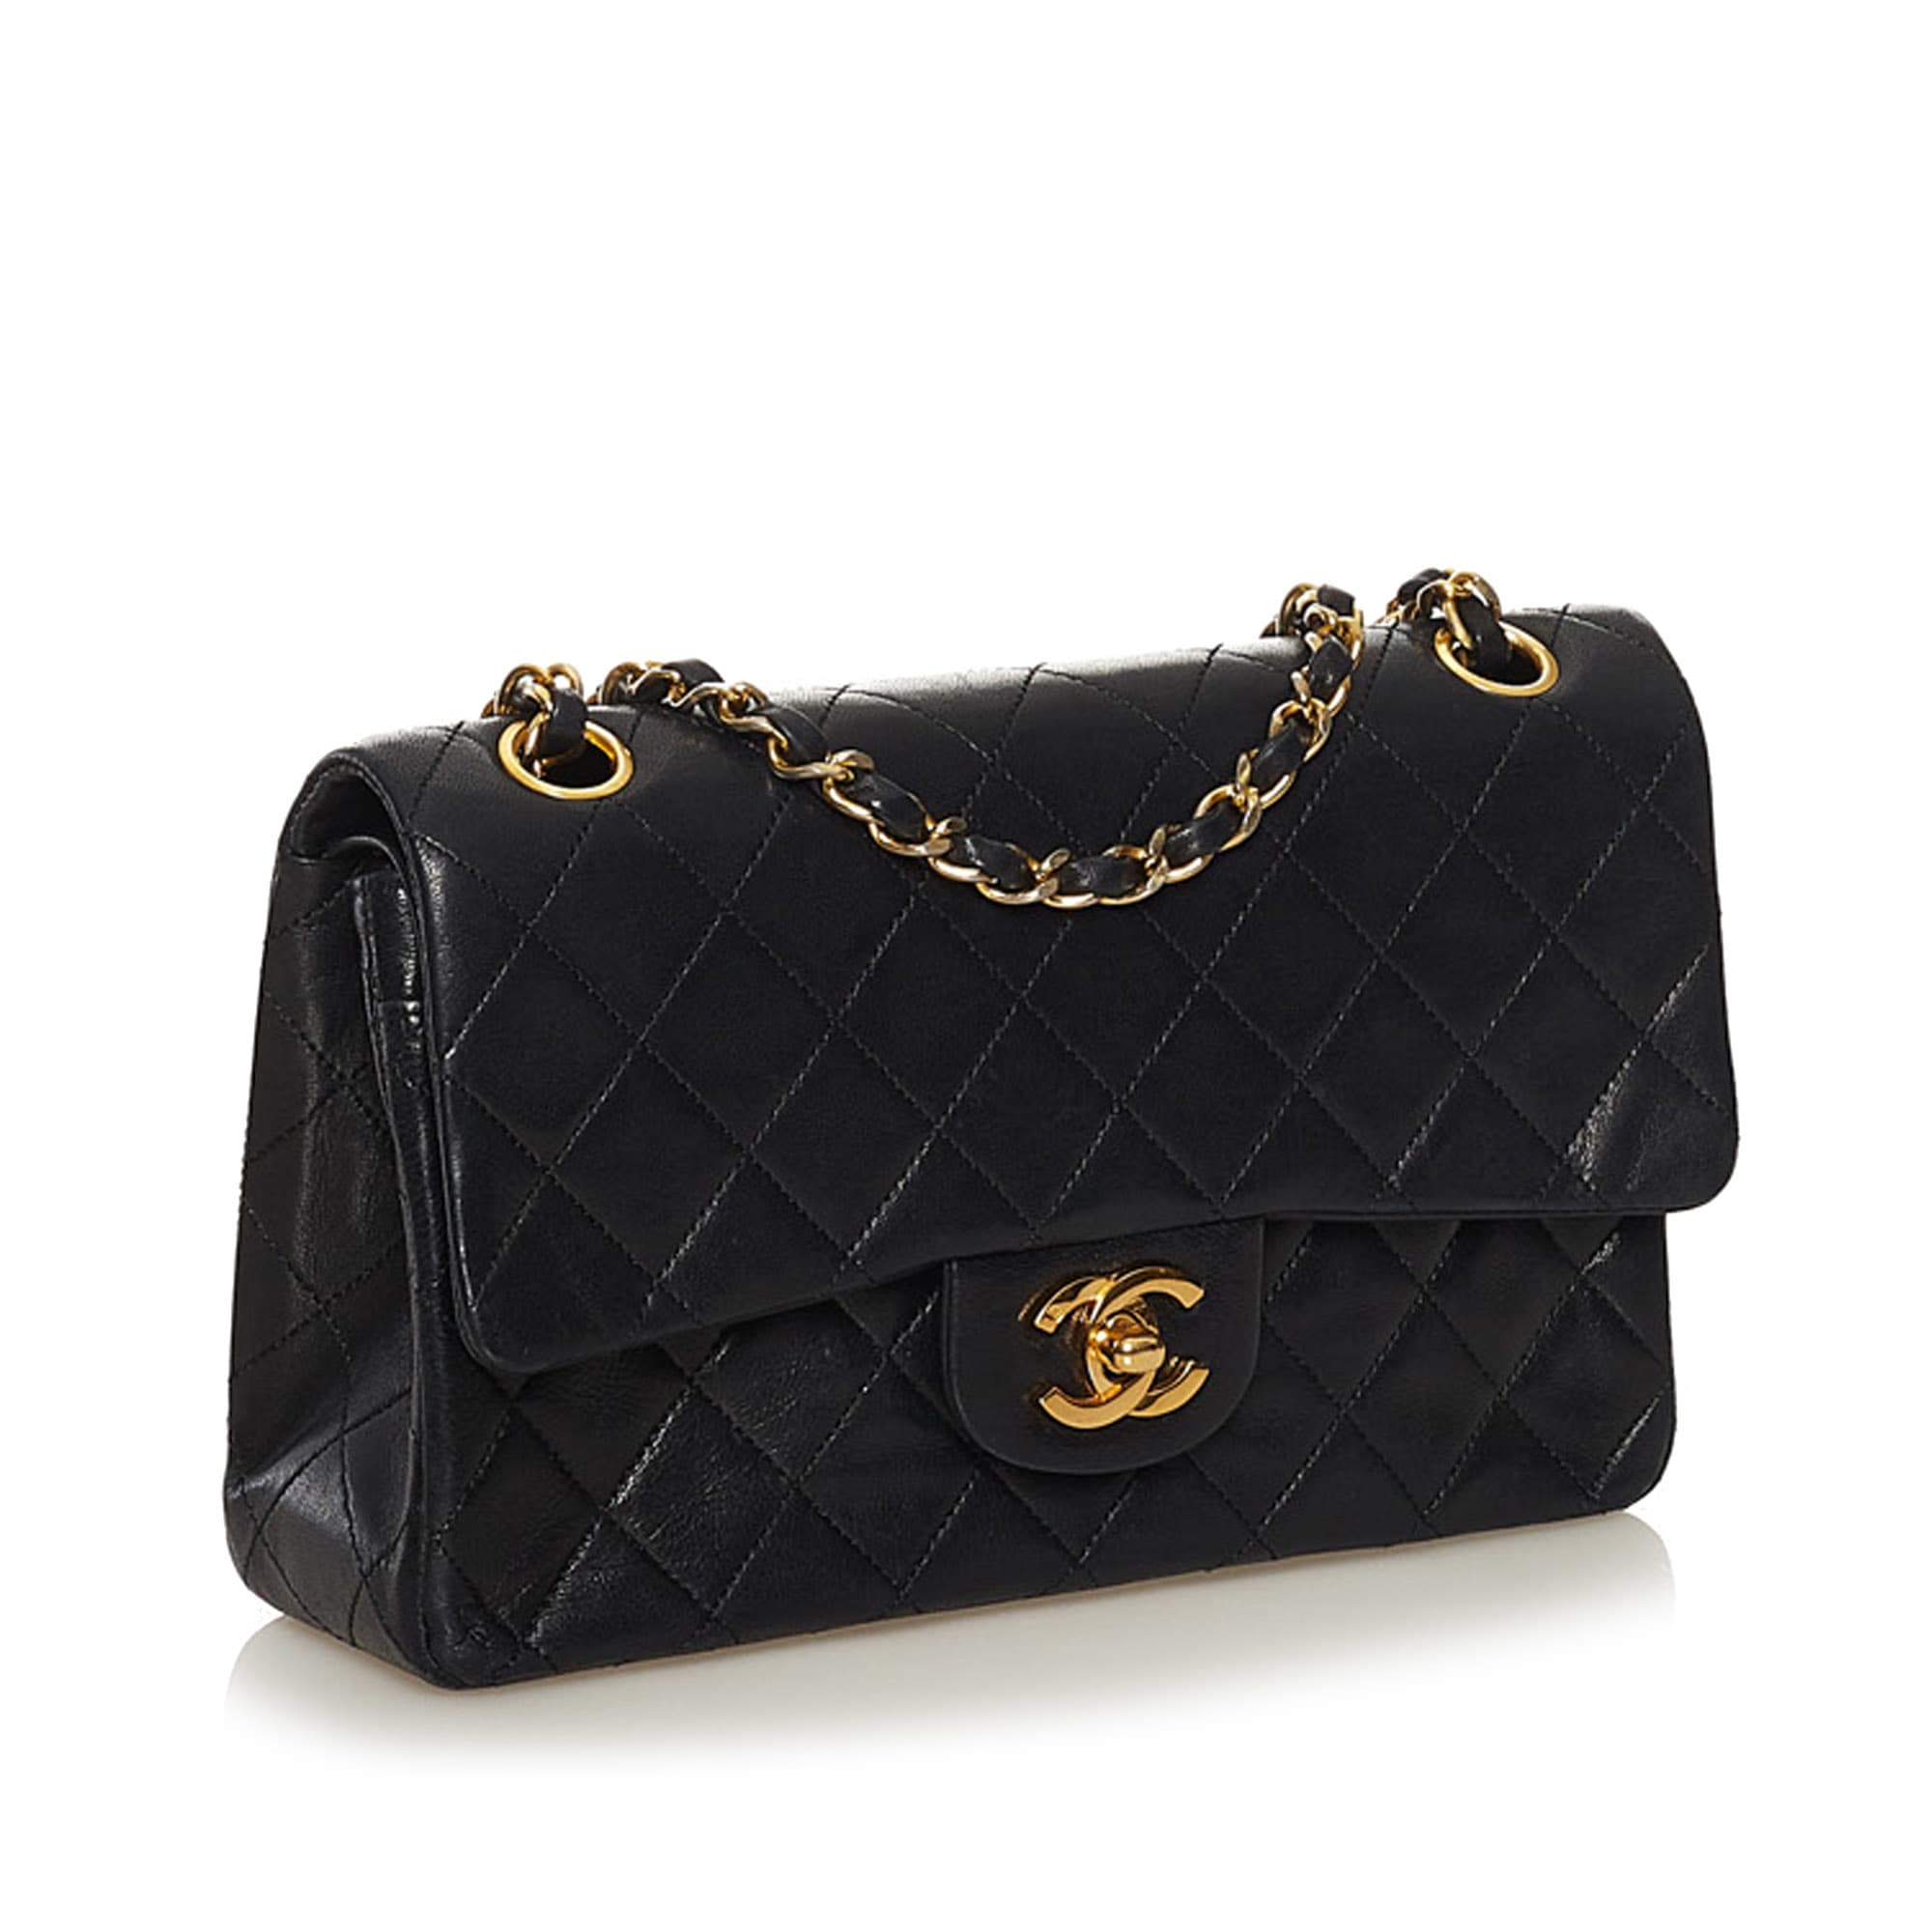 Chanel Small Cc Matelasse Lambskin Flap Bag, ONESIZE